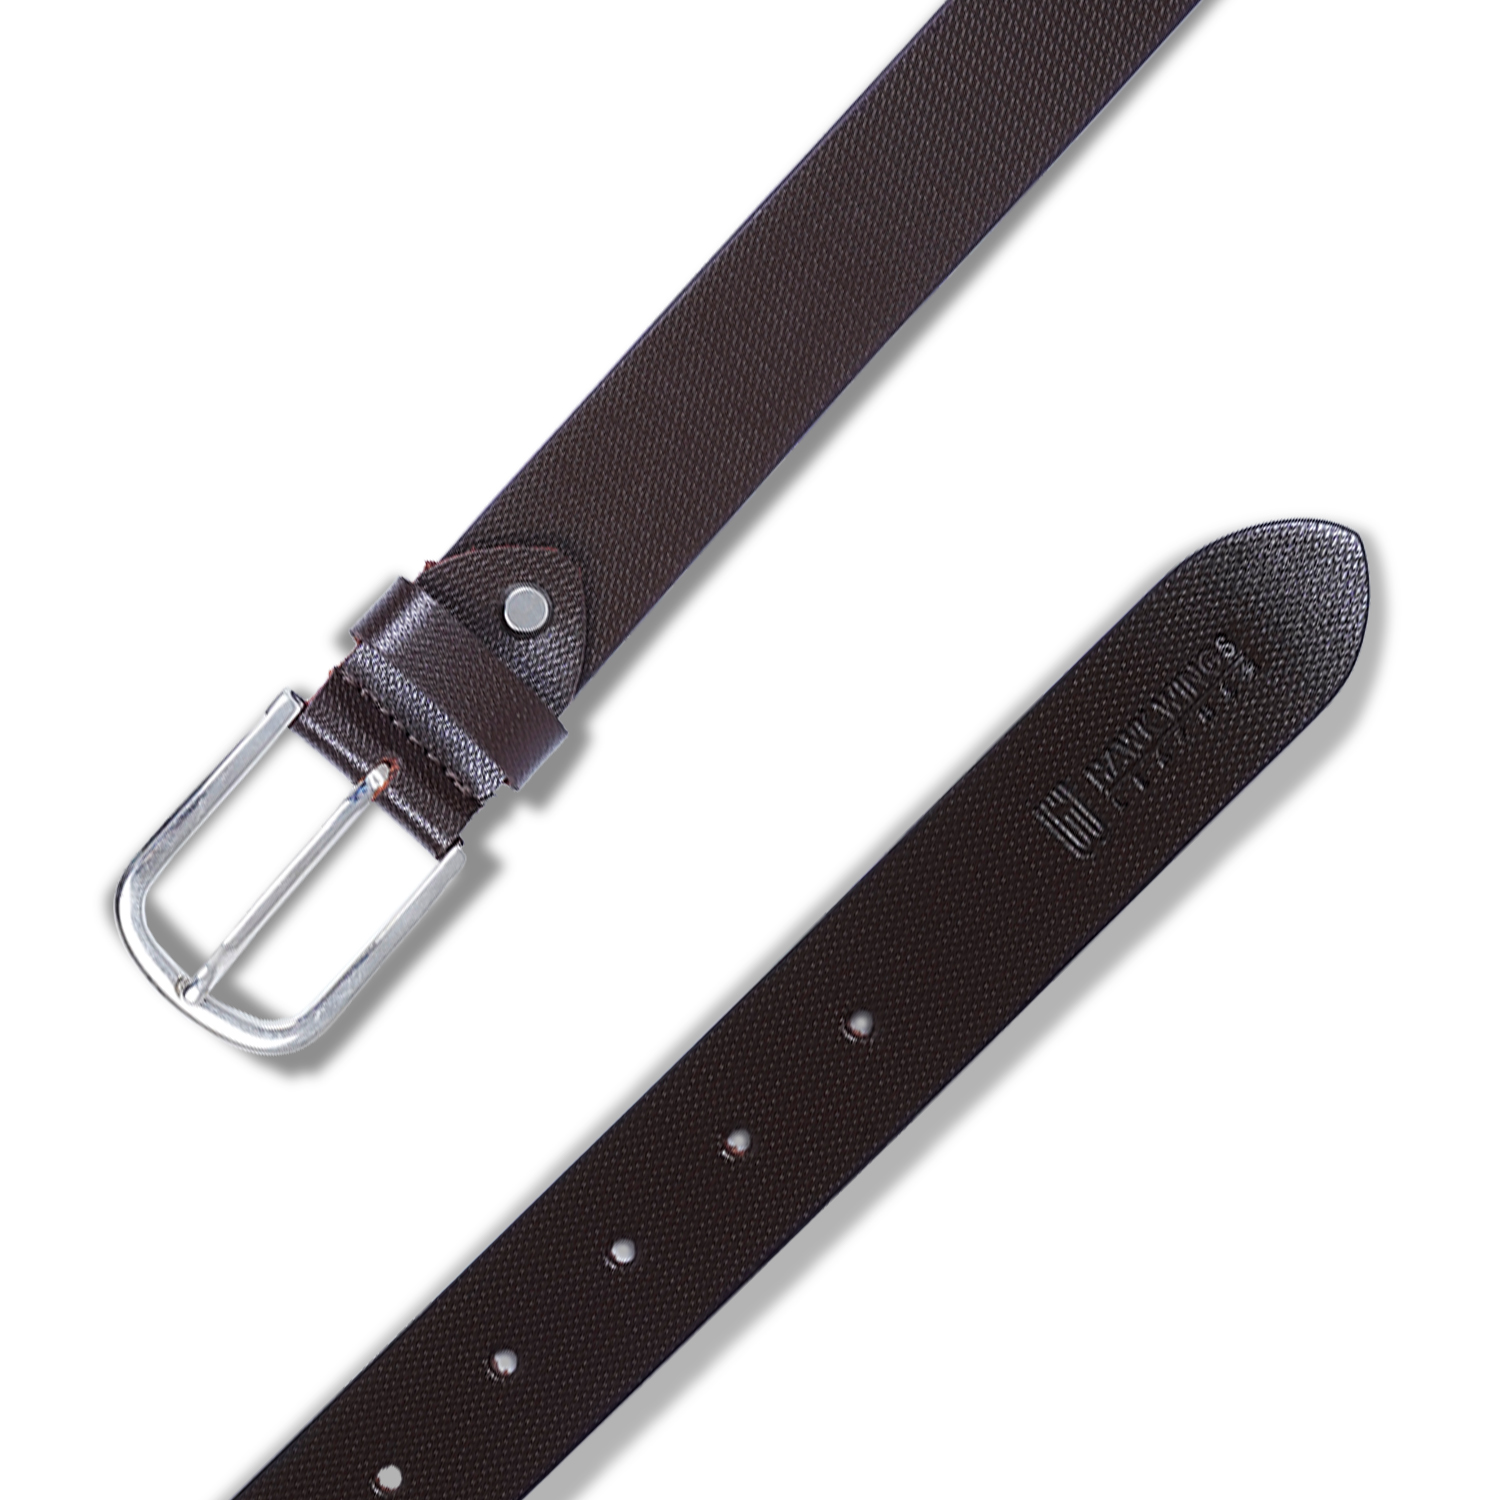  Genuine Leather Belt for Men |Brown| Formal Belt-asset-273